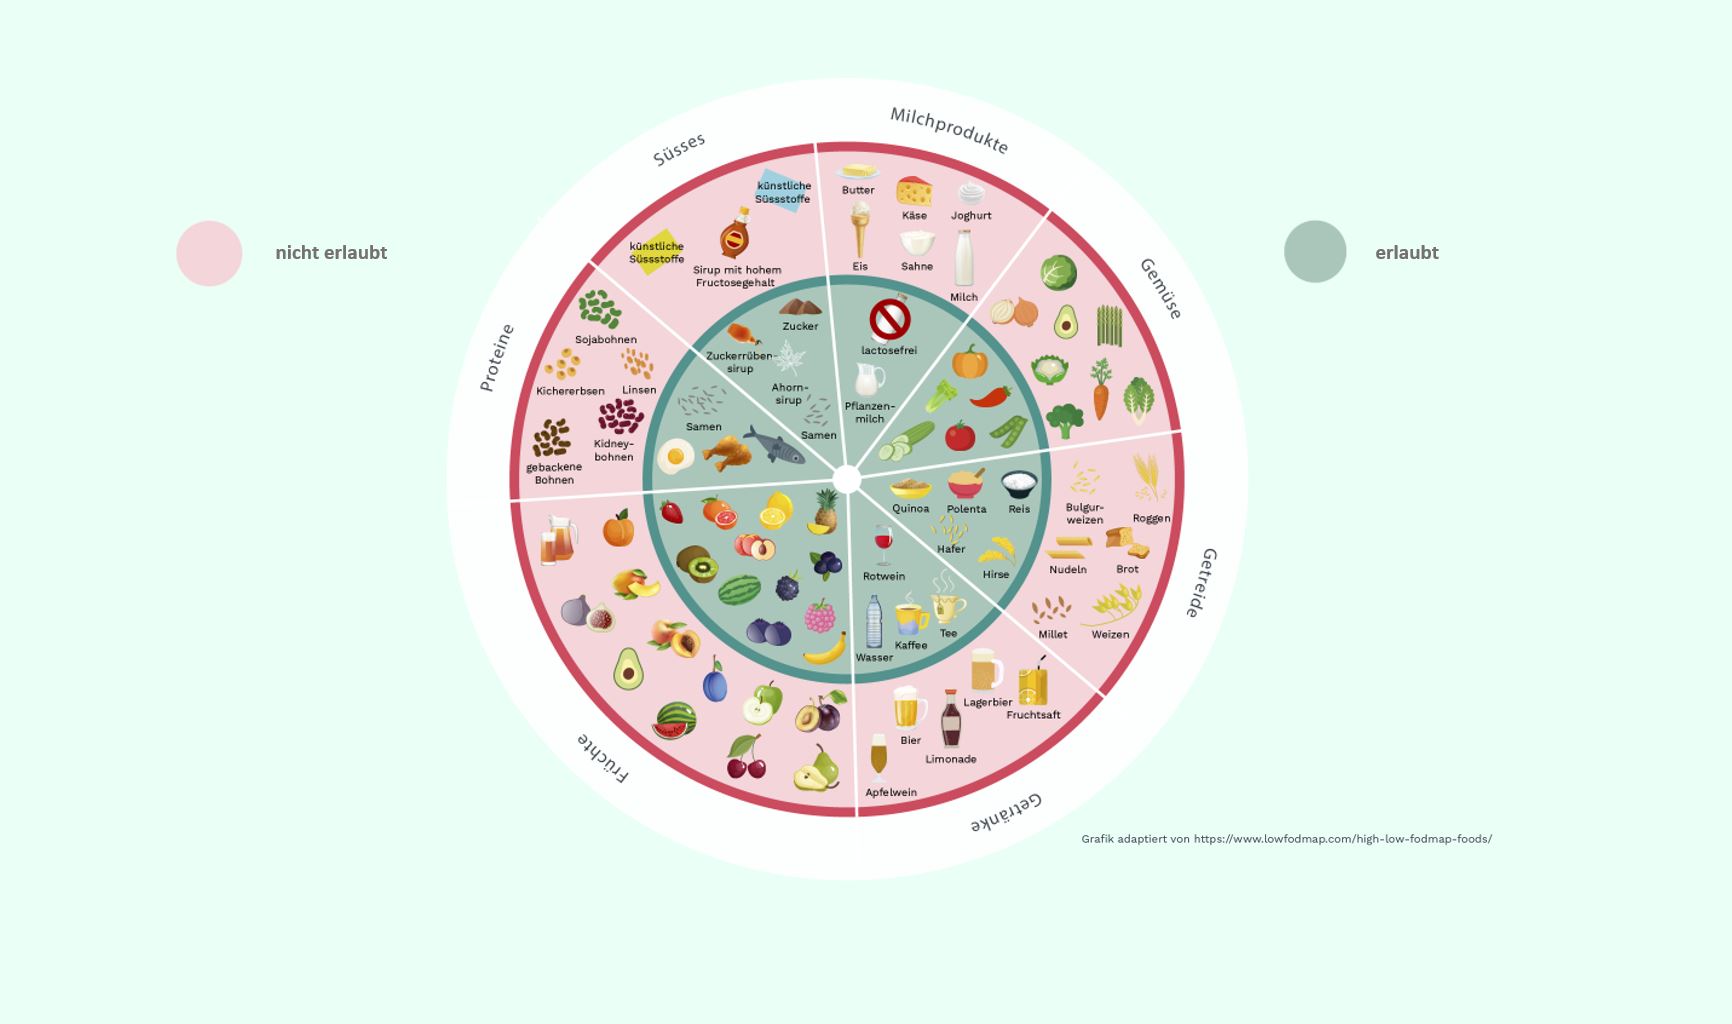 Die Infografik zeigt einige Beispiele dafür, was im Rahmen der Diät erlaubt ist und was nicht.